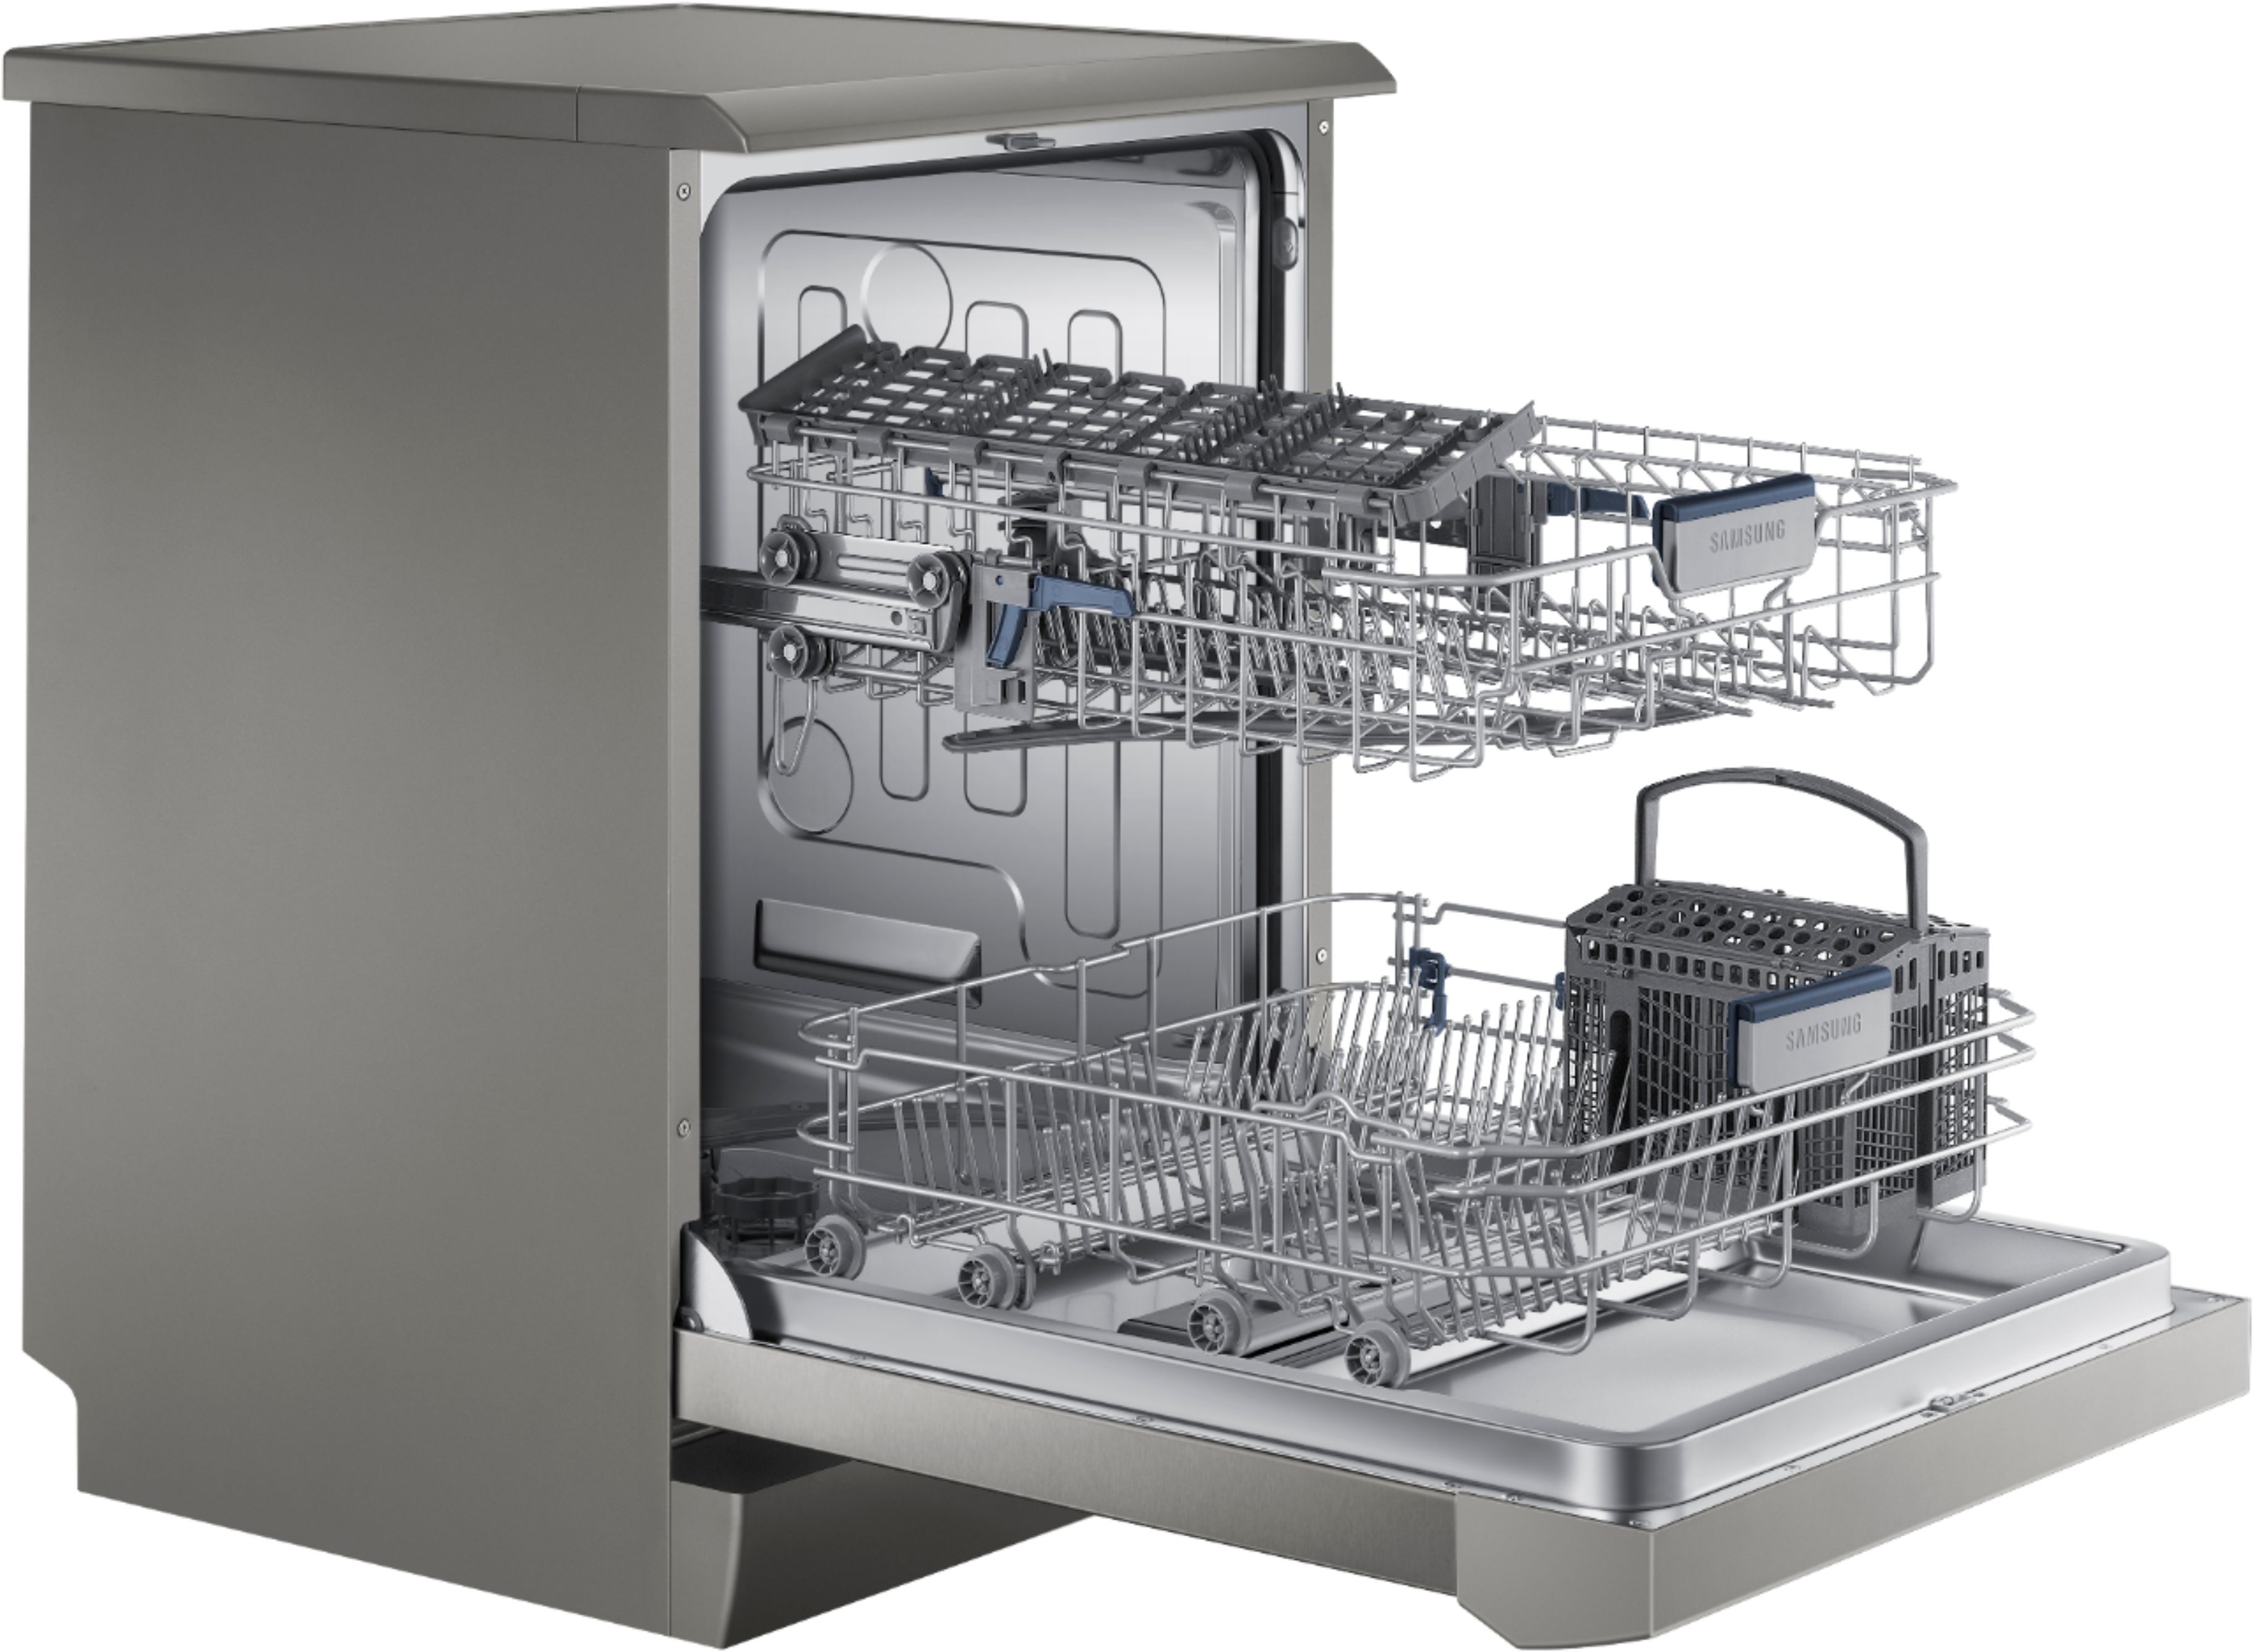 best buy samsung dishwasher